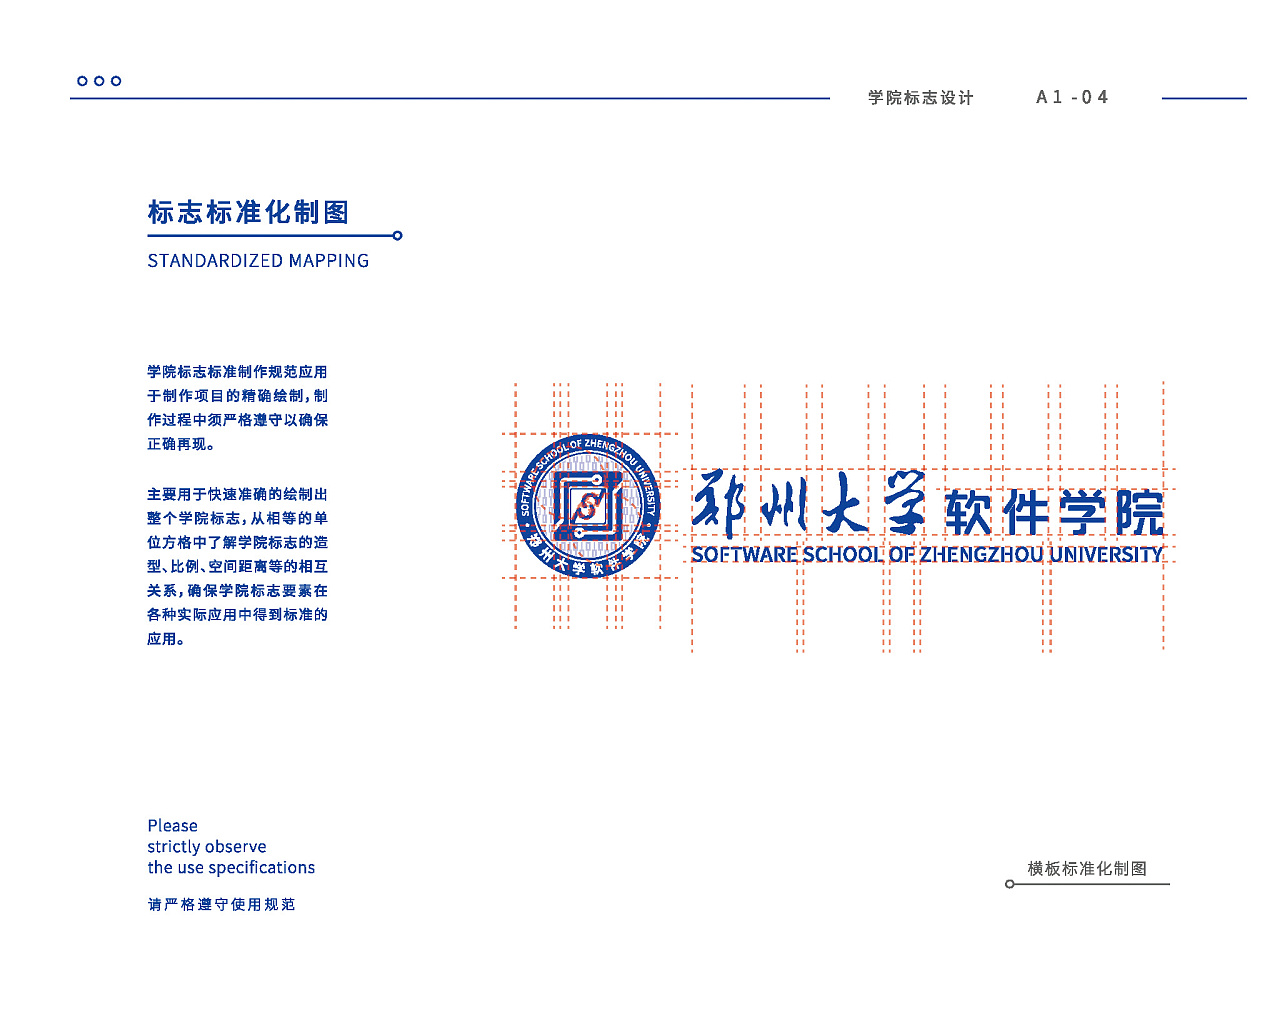 郑州大学软件学院院徽vi基础部分